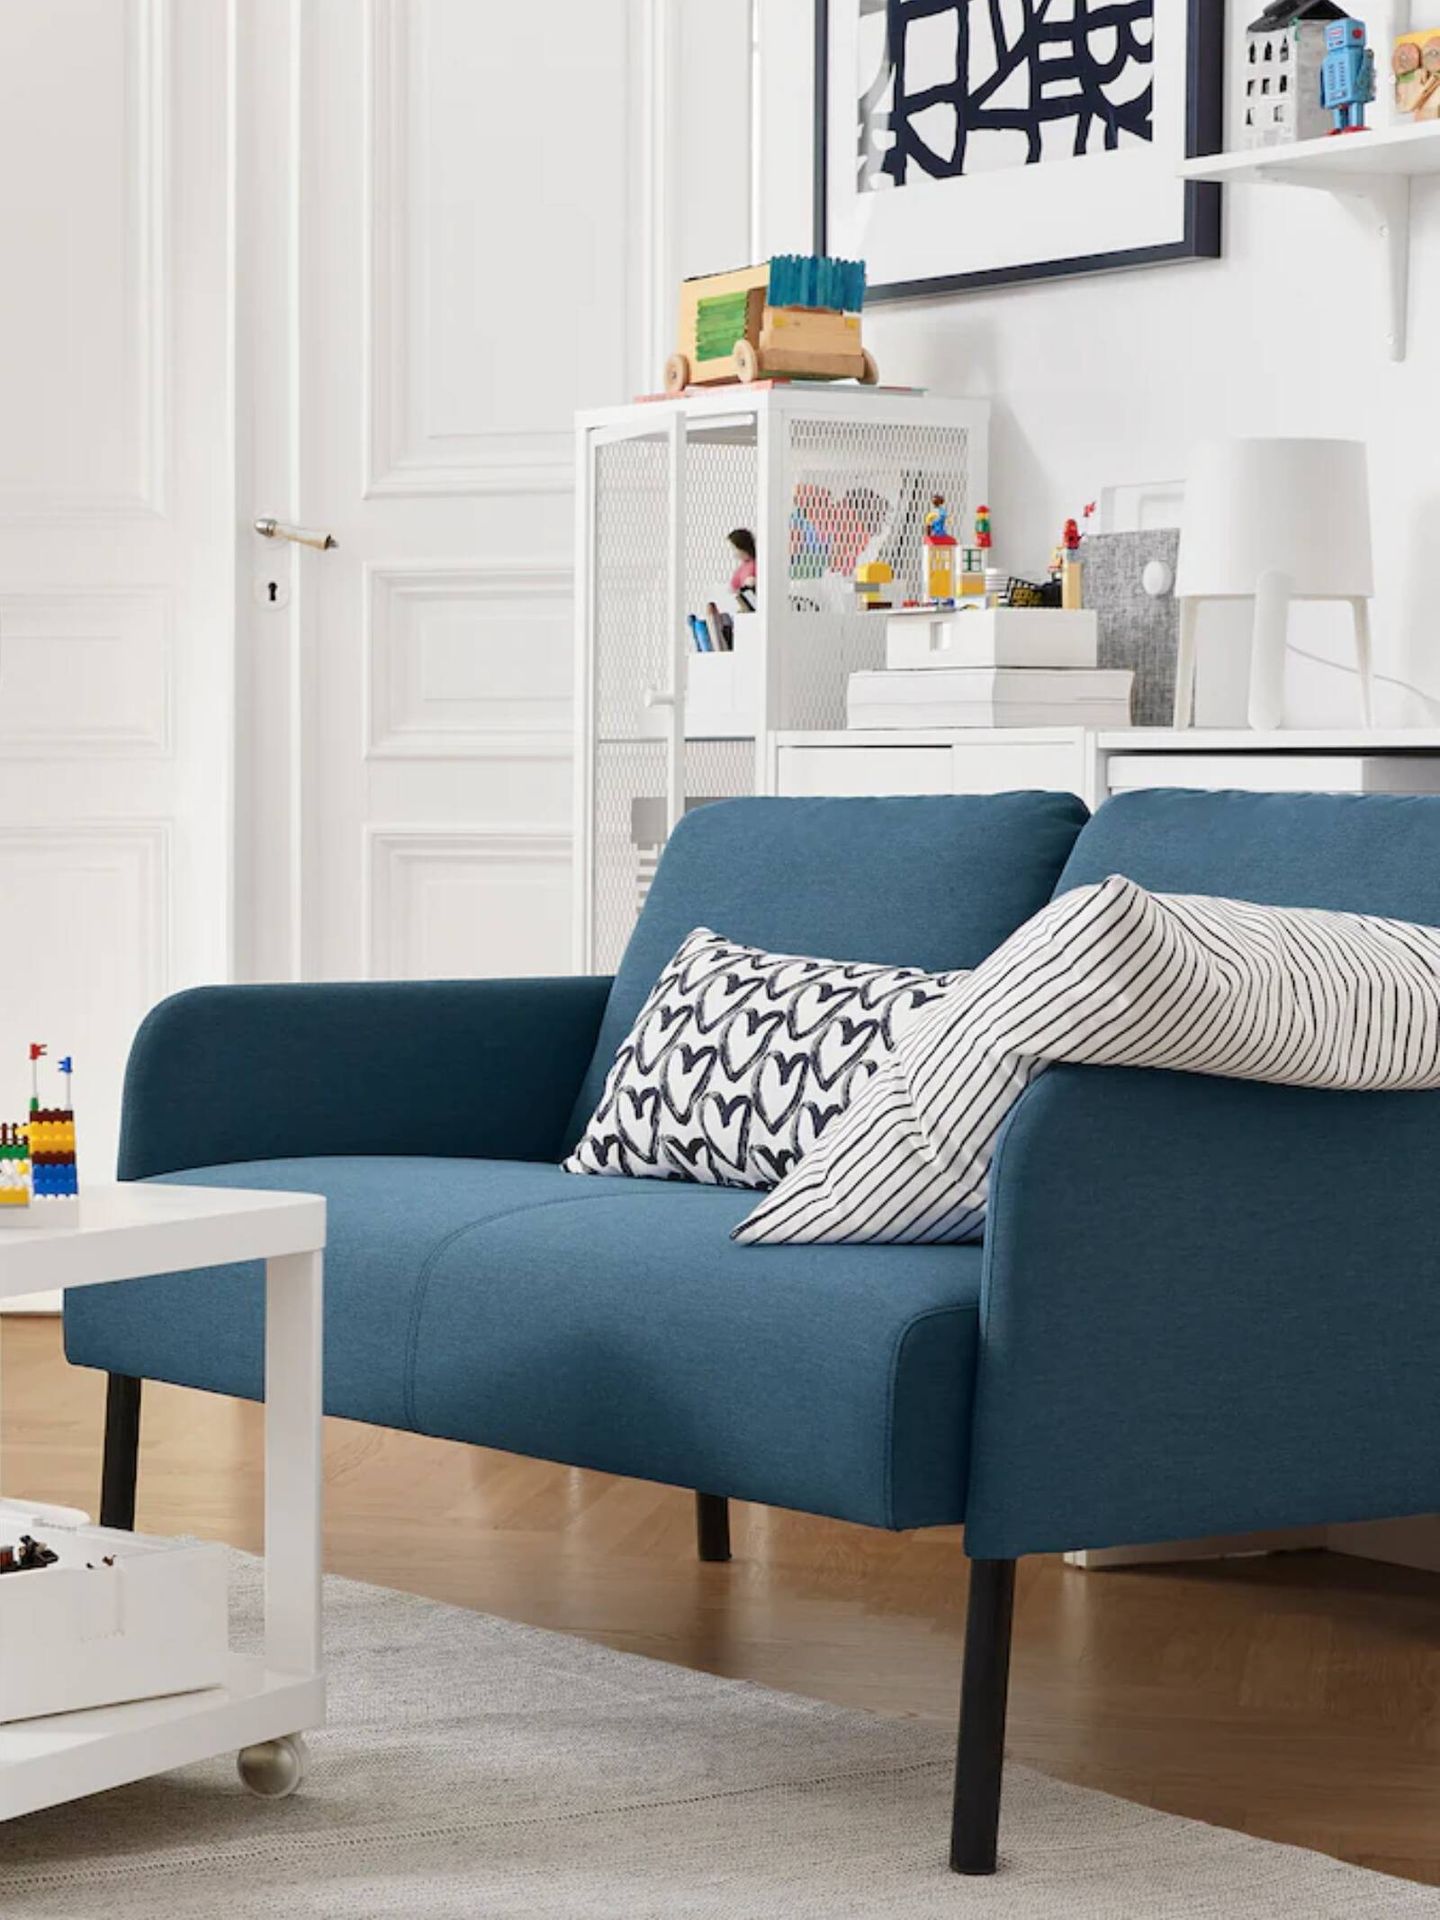 Sofá de Ikea para salones pequeños. (Cortesía)